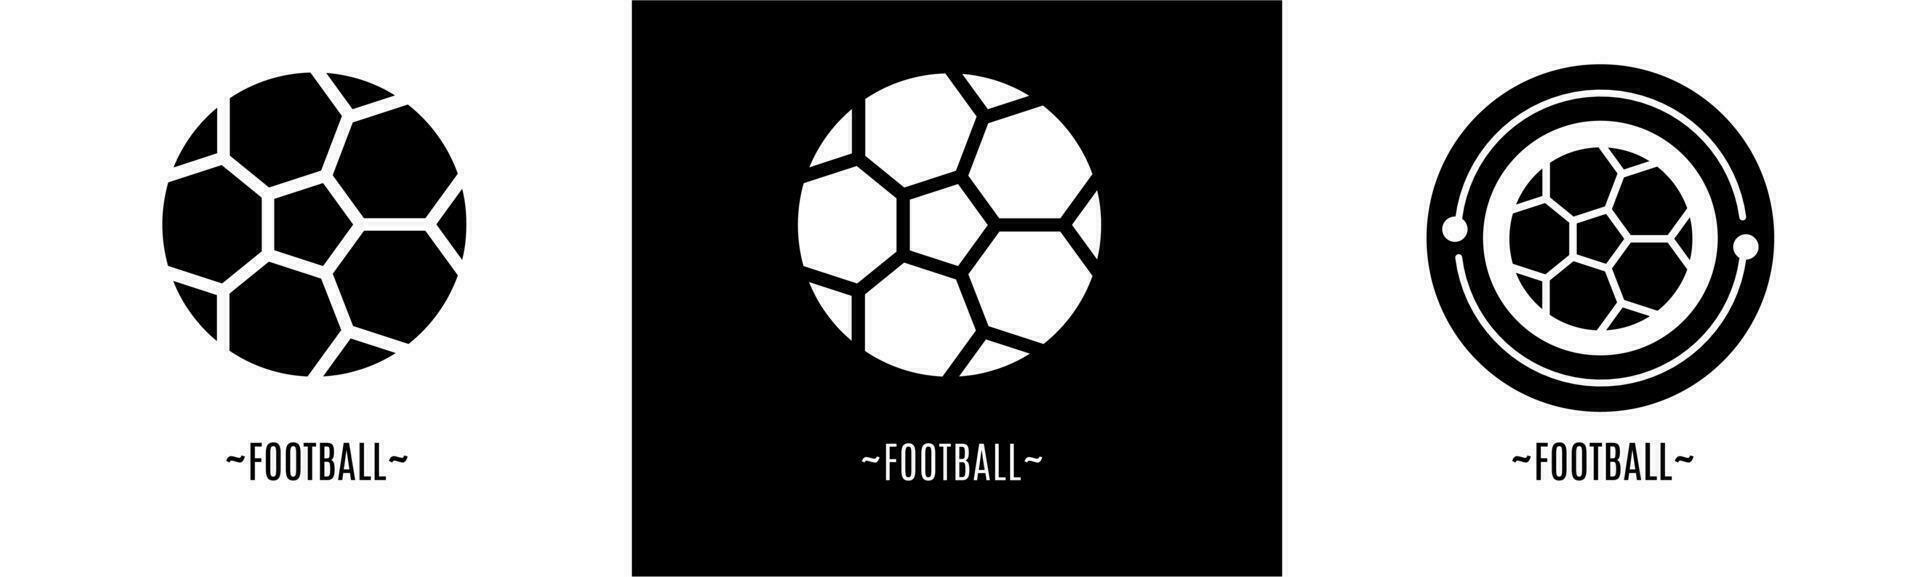 Football logo ensemble. collection de noir et blanc logos. Stock vecteur. vecteur